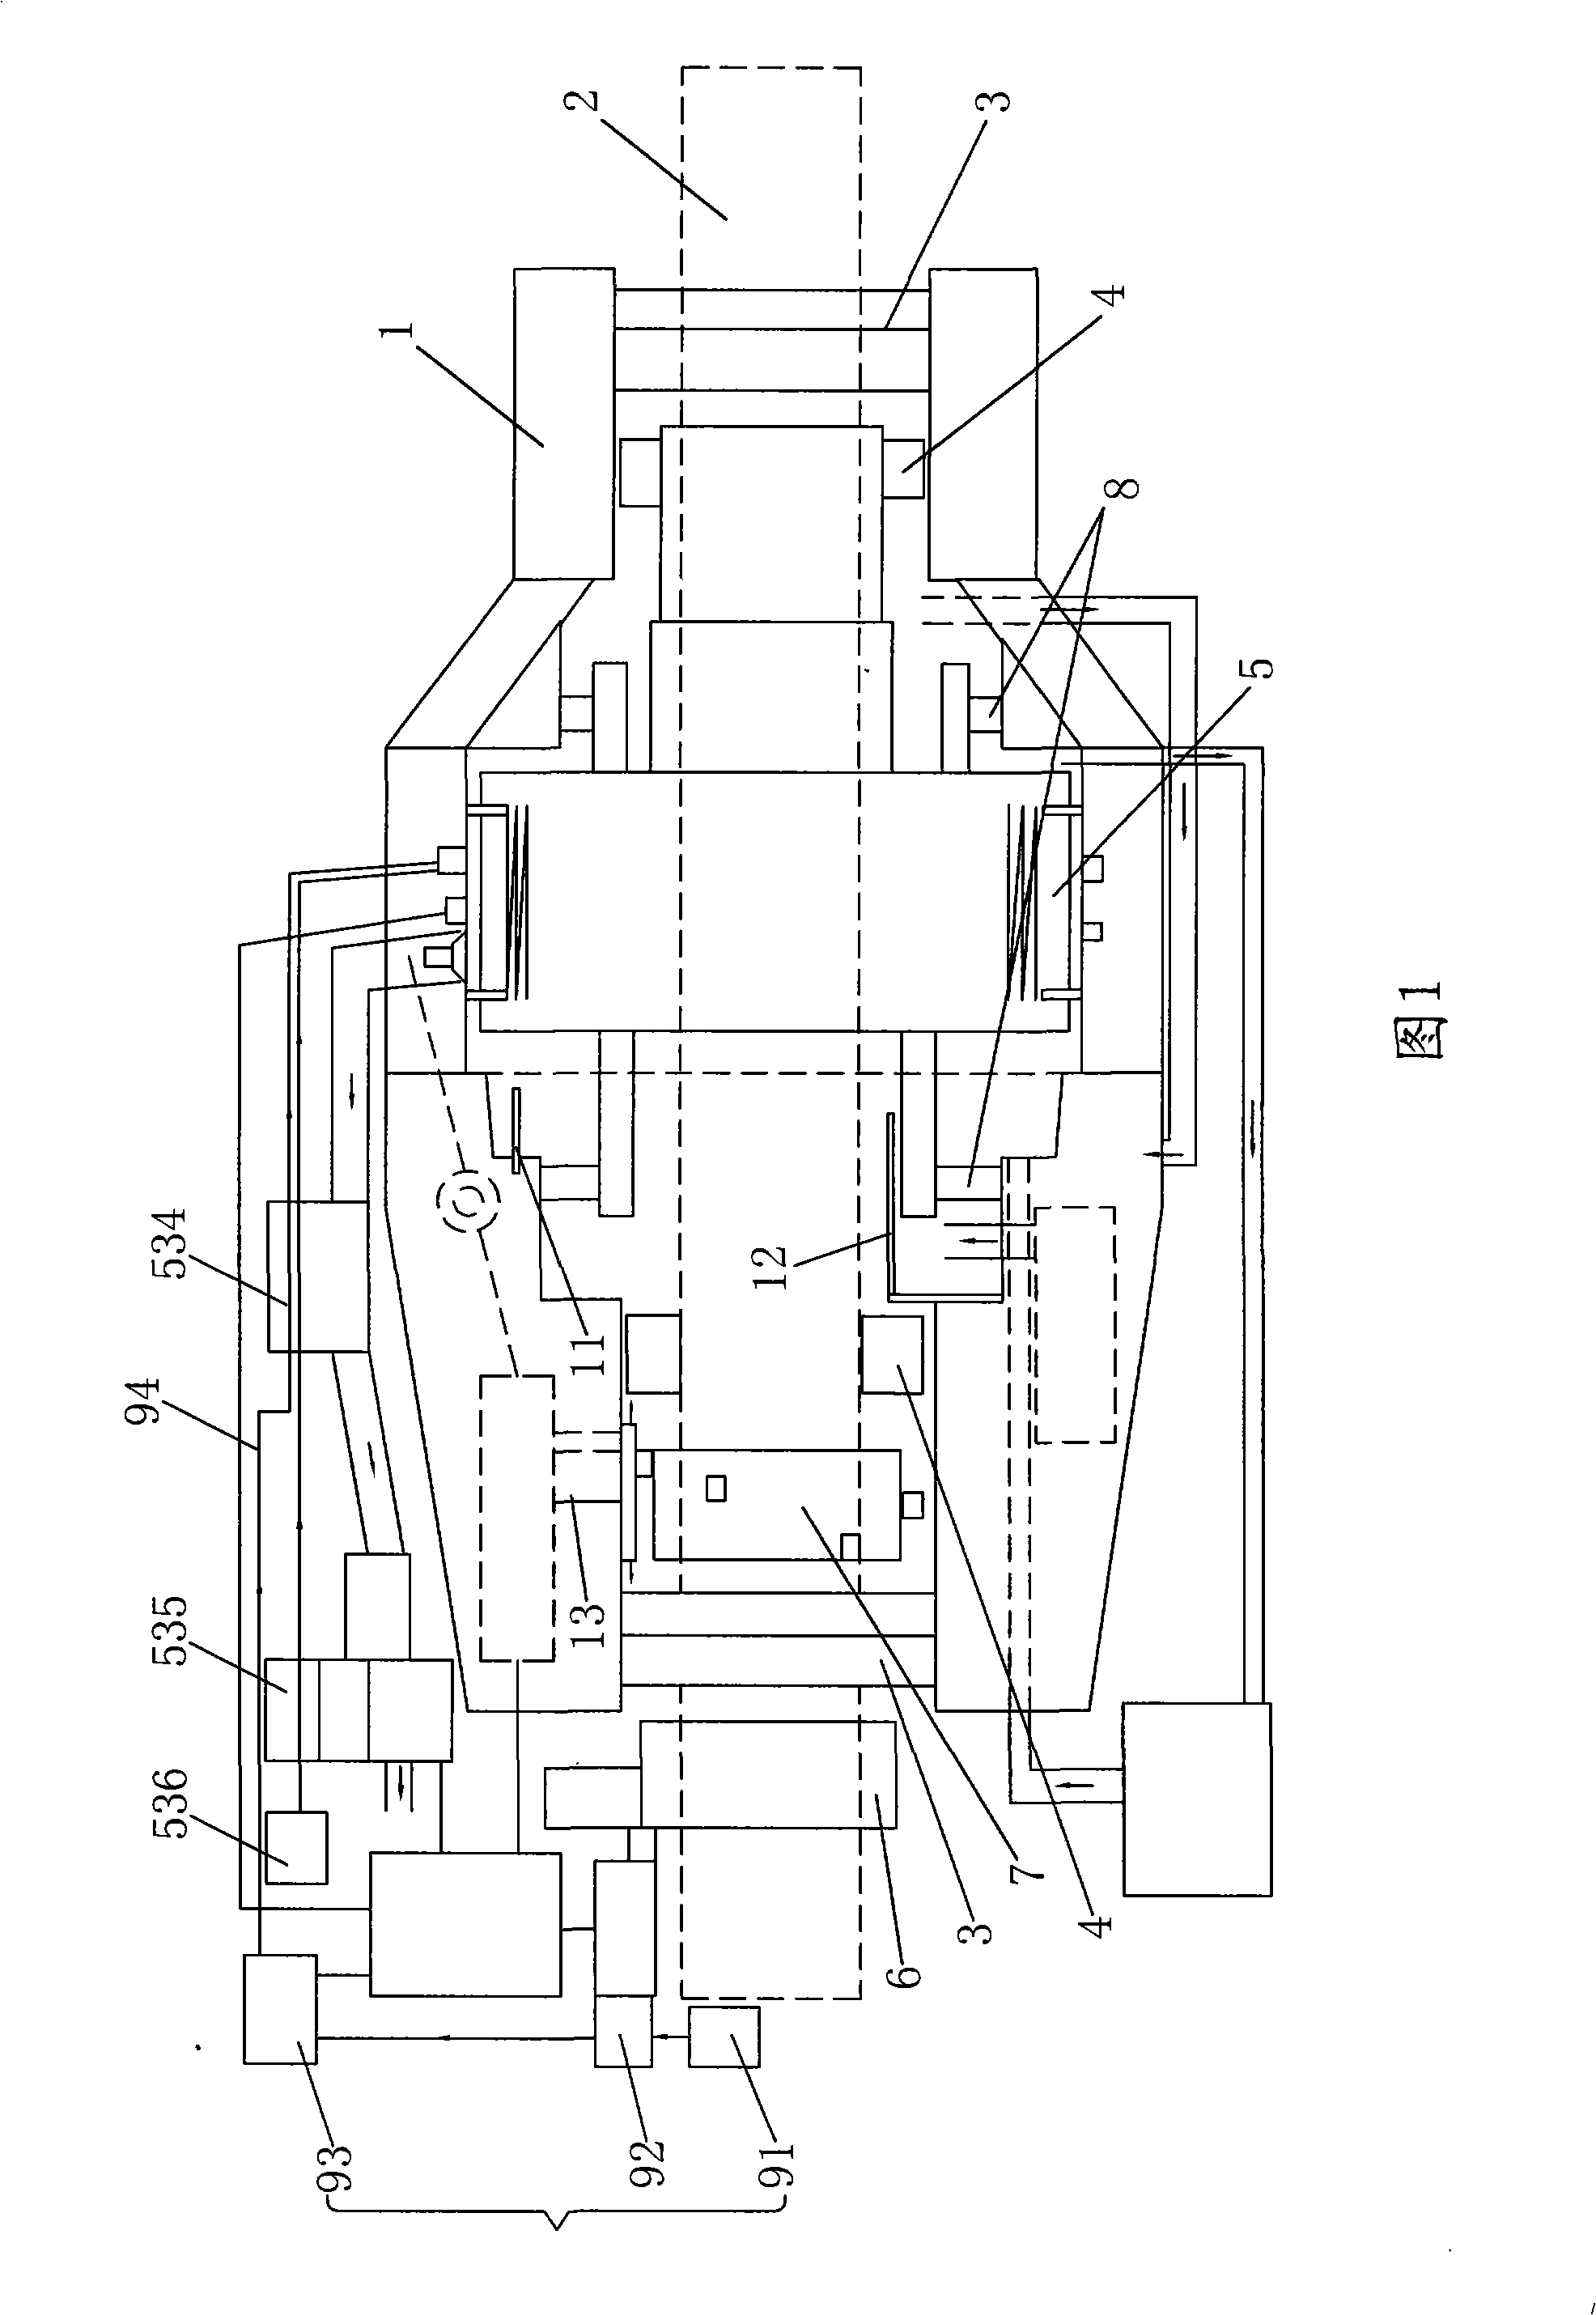 Novel rotary piston type engine